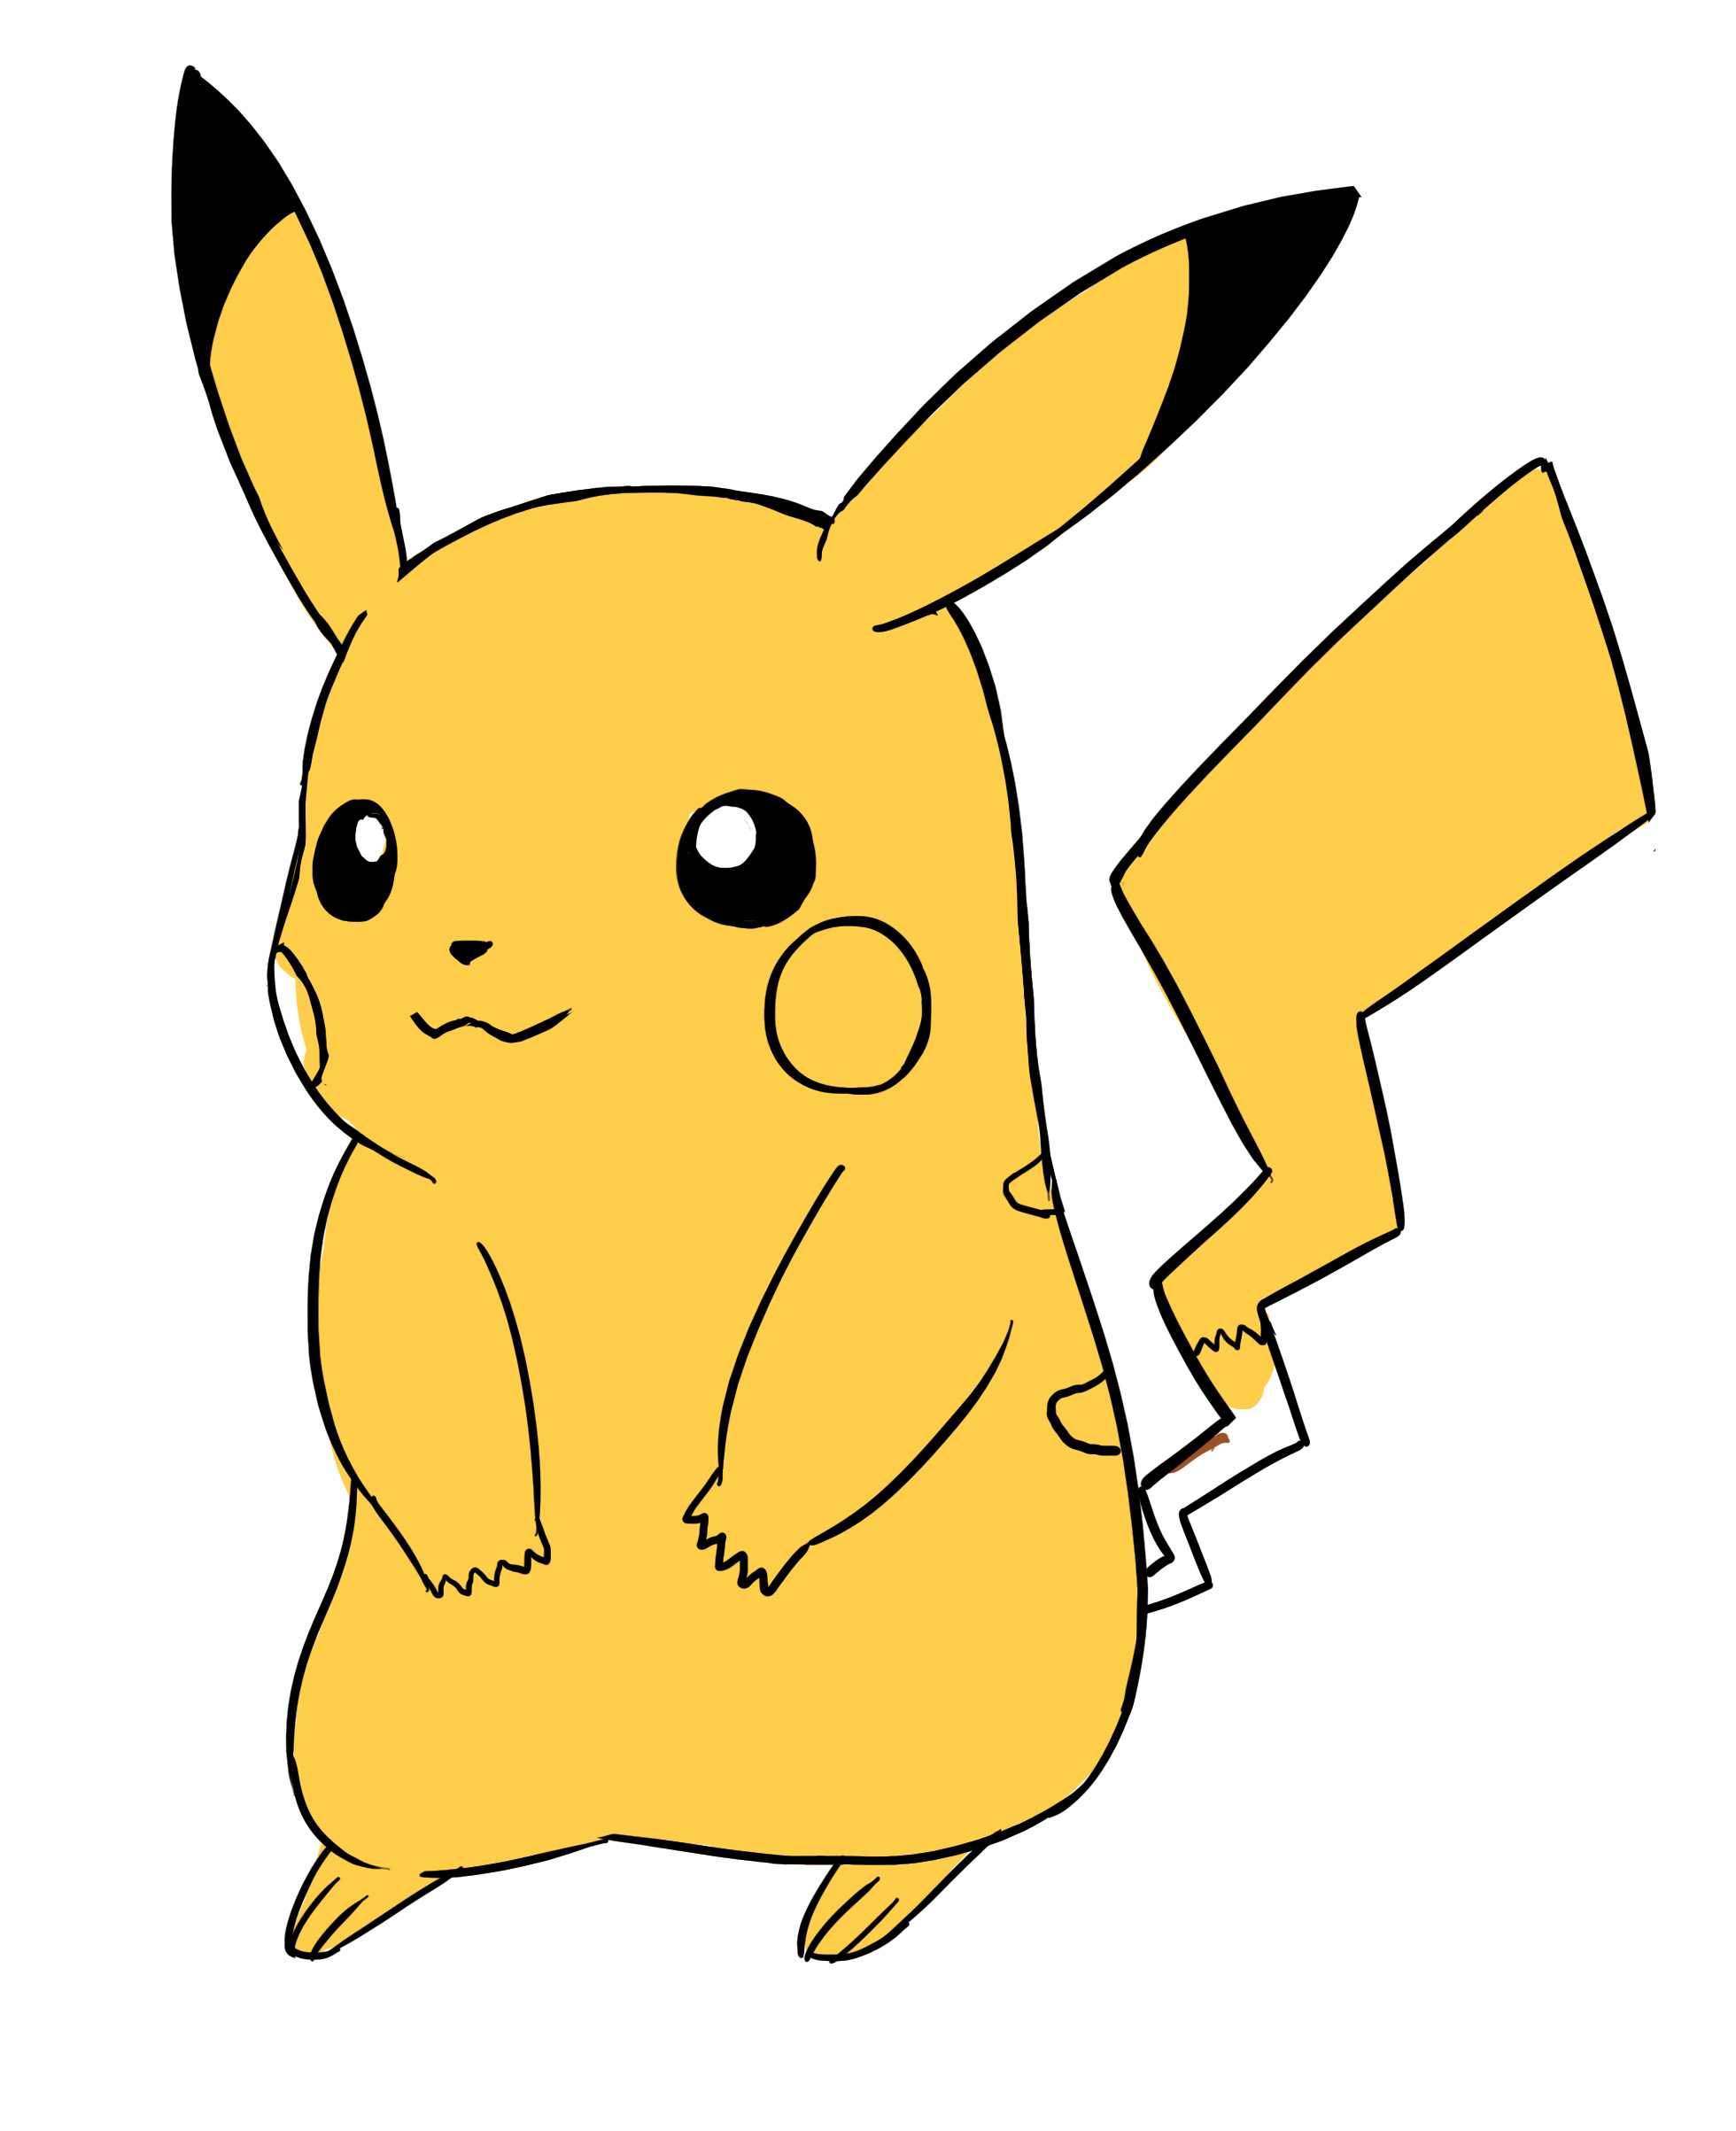 Appliquer la couleur jaune au corps de Pikachu